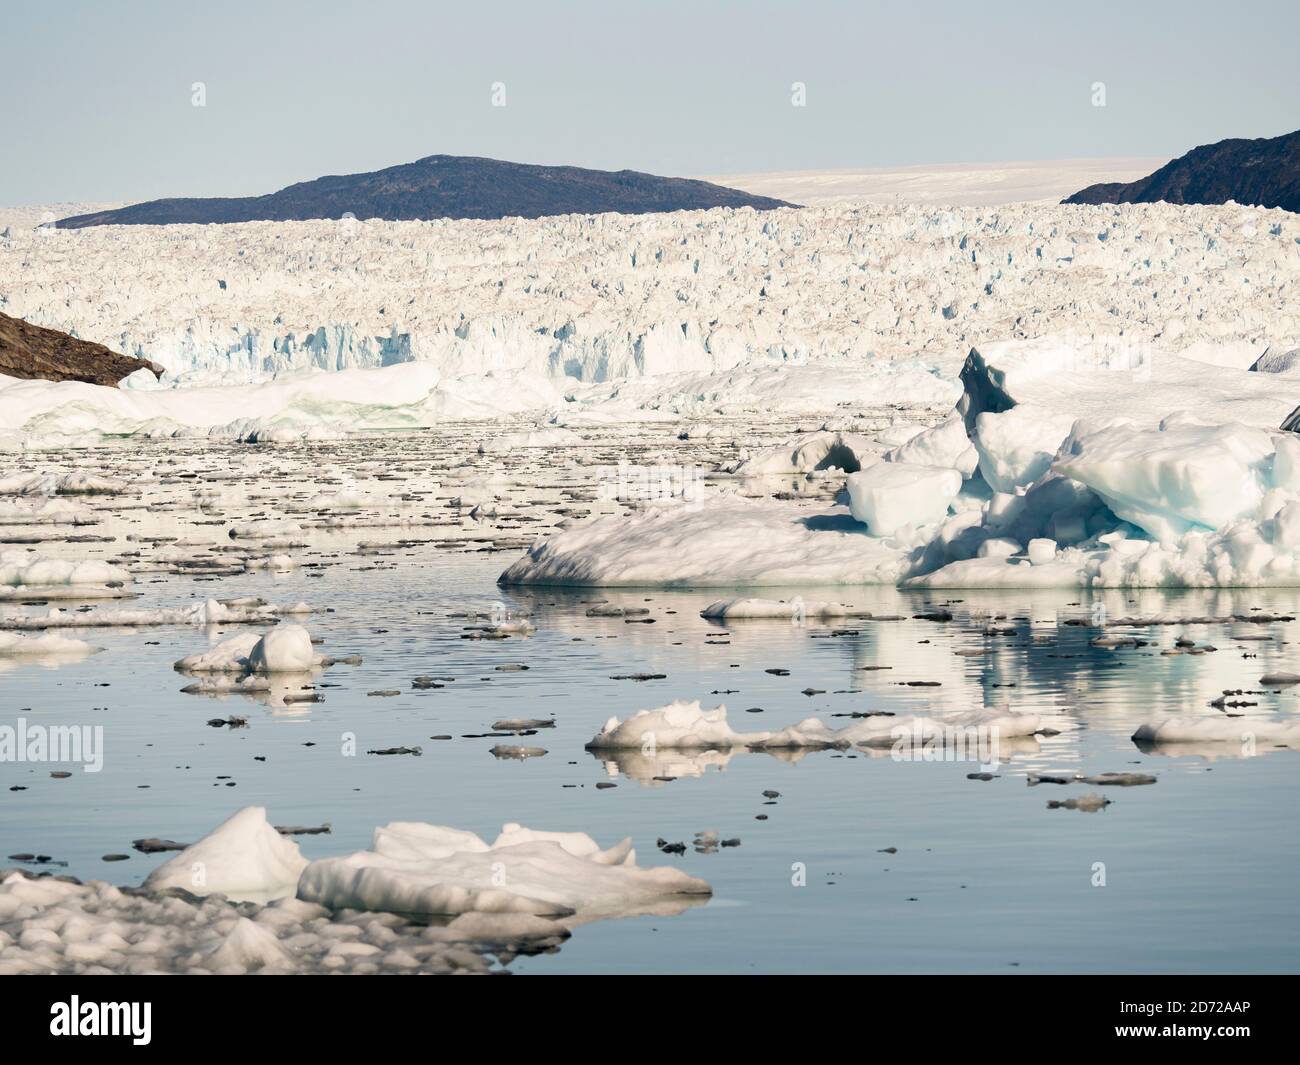 Icebergs dans le système du fjord d'Uummannaq, dans le nord de l'ouest du groenland. Glacier Store Gletscher et la calotte glaciaire en arrière-plan. Amérique, Amérique du Nord Banque D'Images